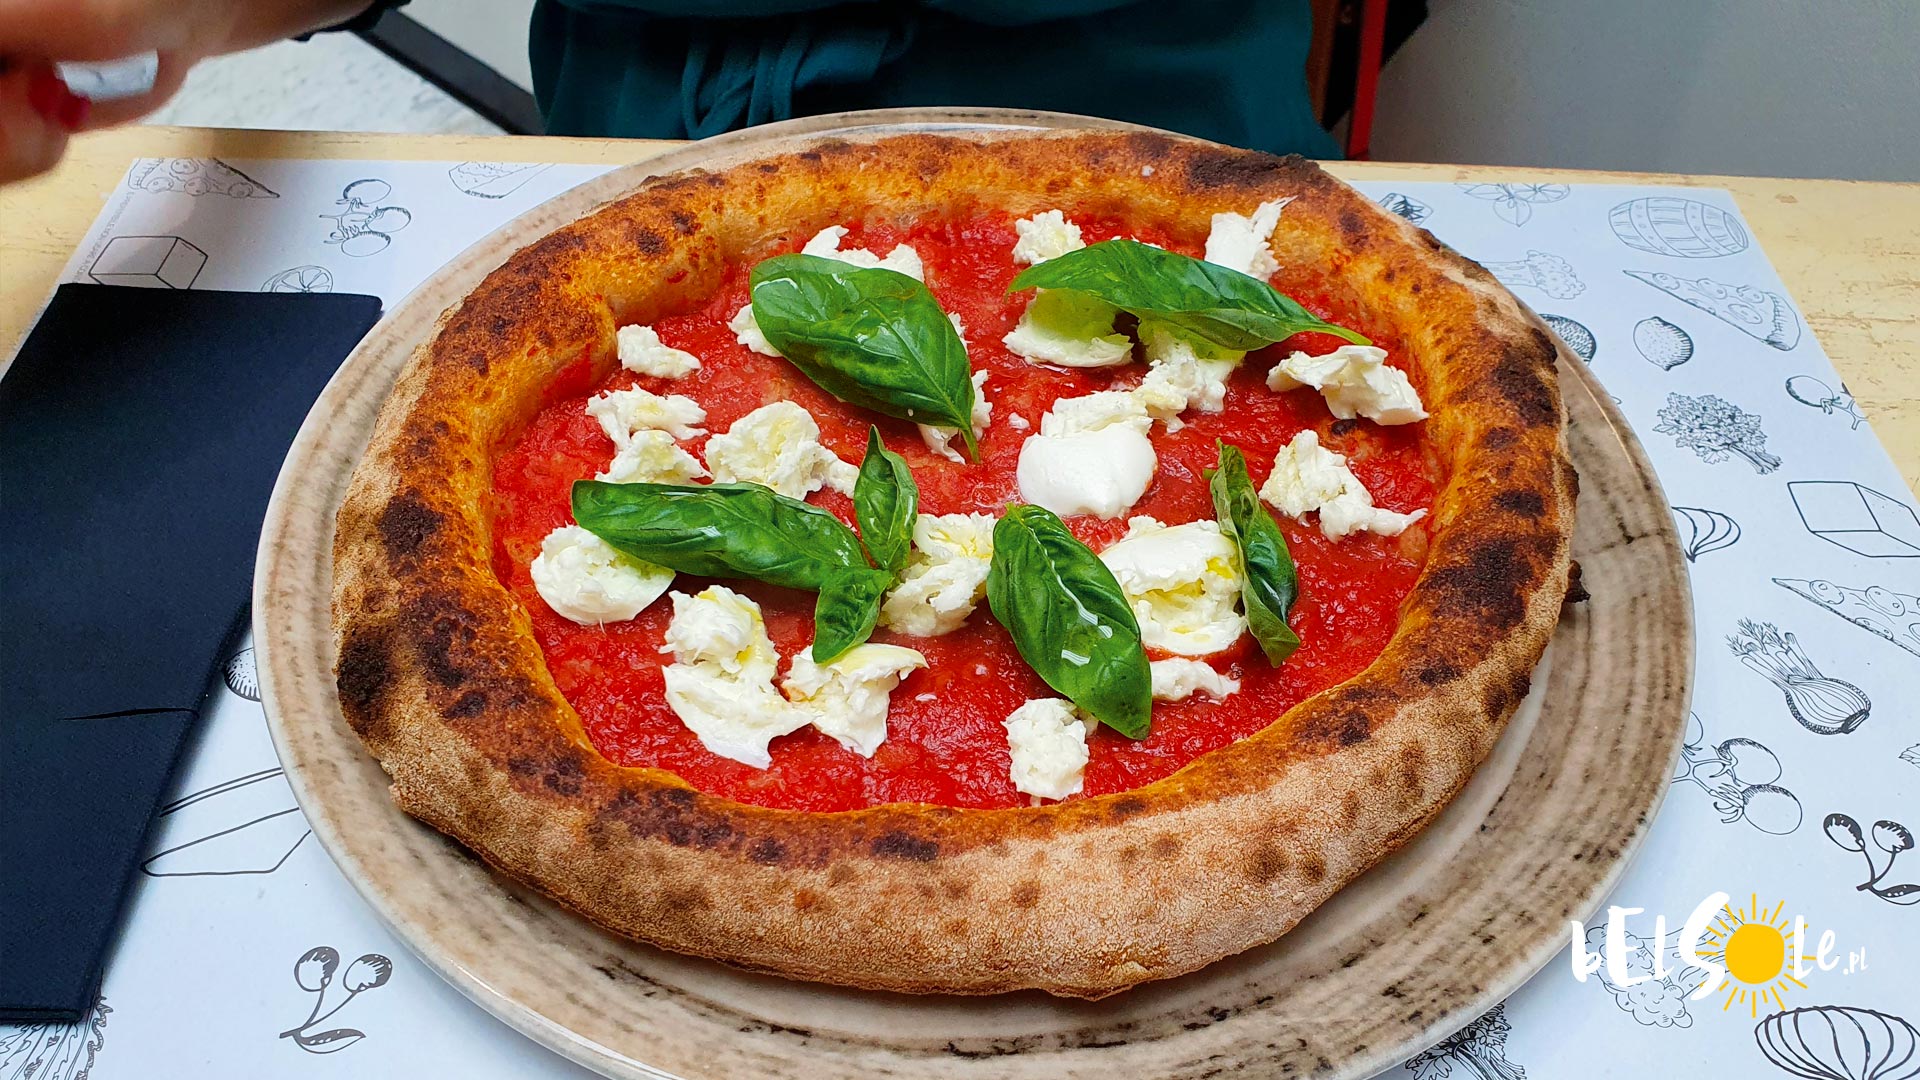 Jak wygląda włoska pizza? Jakie ciasto i dodatki? MEGAGALERIA BelSole